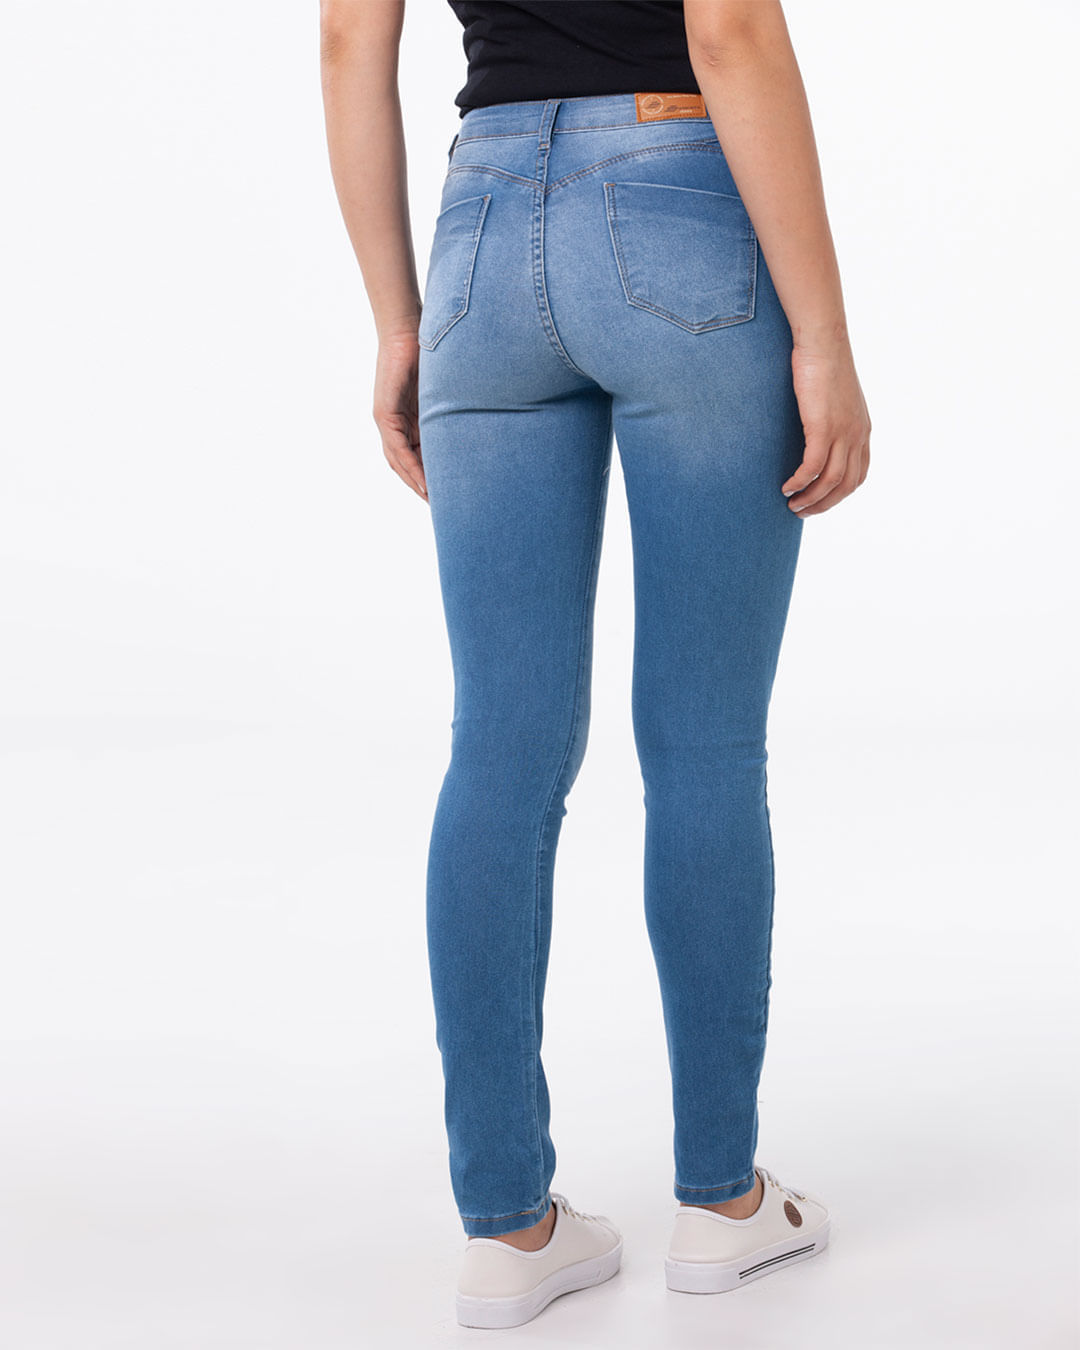 Calca-Jeans-Feminina-Skinny-Azul-Sawary-Claro